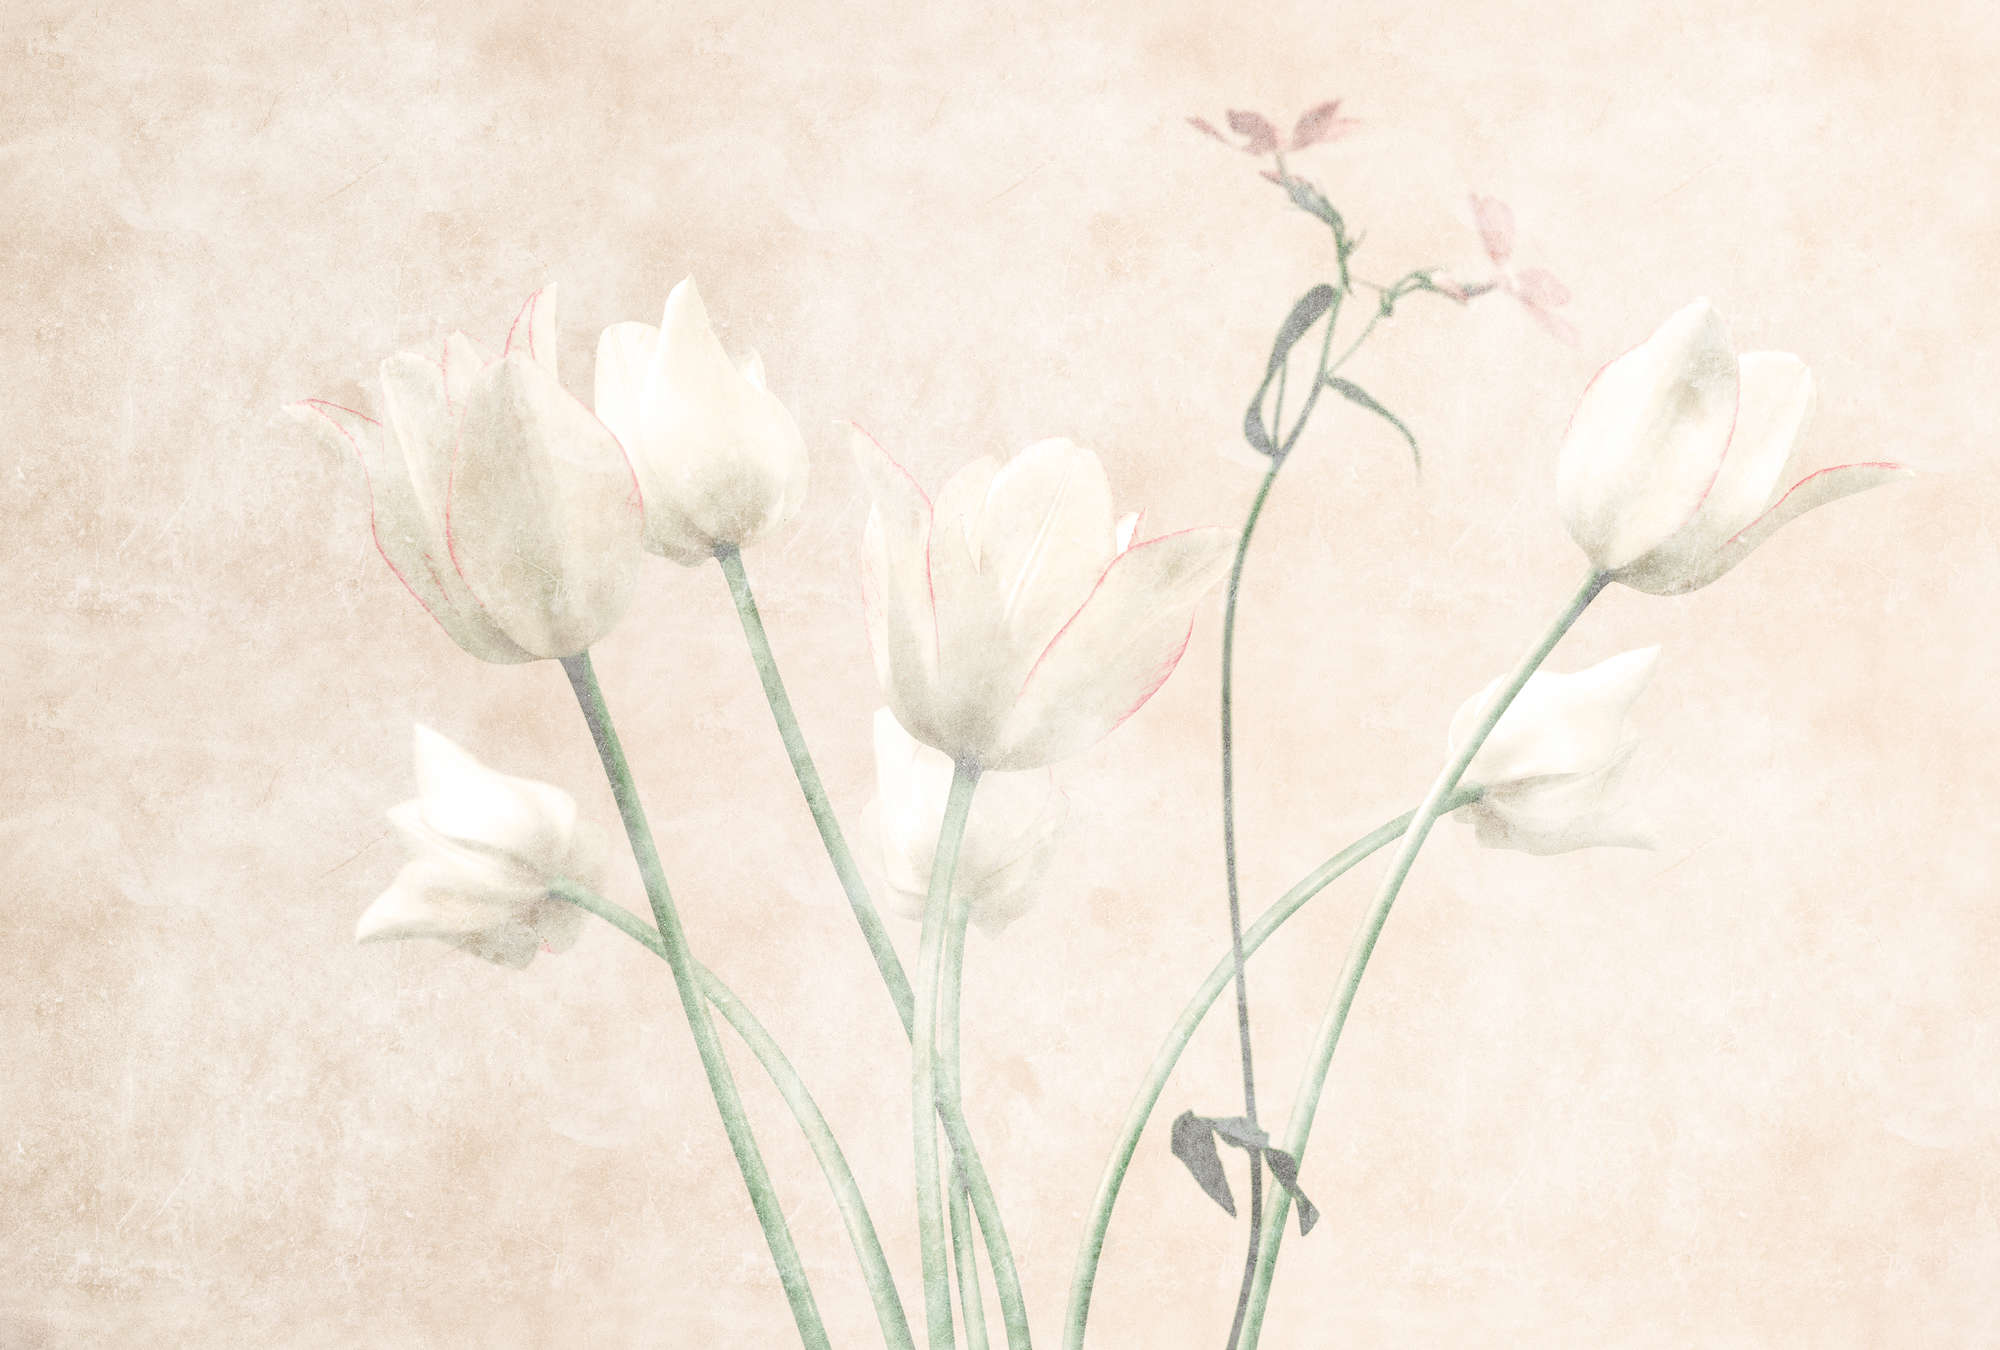             Stanza del mattino 3 - Carta da parati con fiori in stile sbiadito Tulipani
        